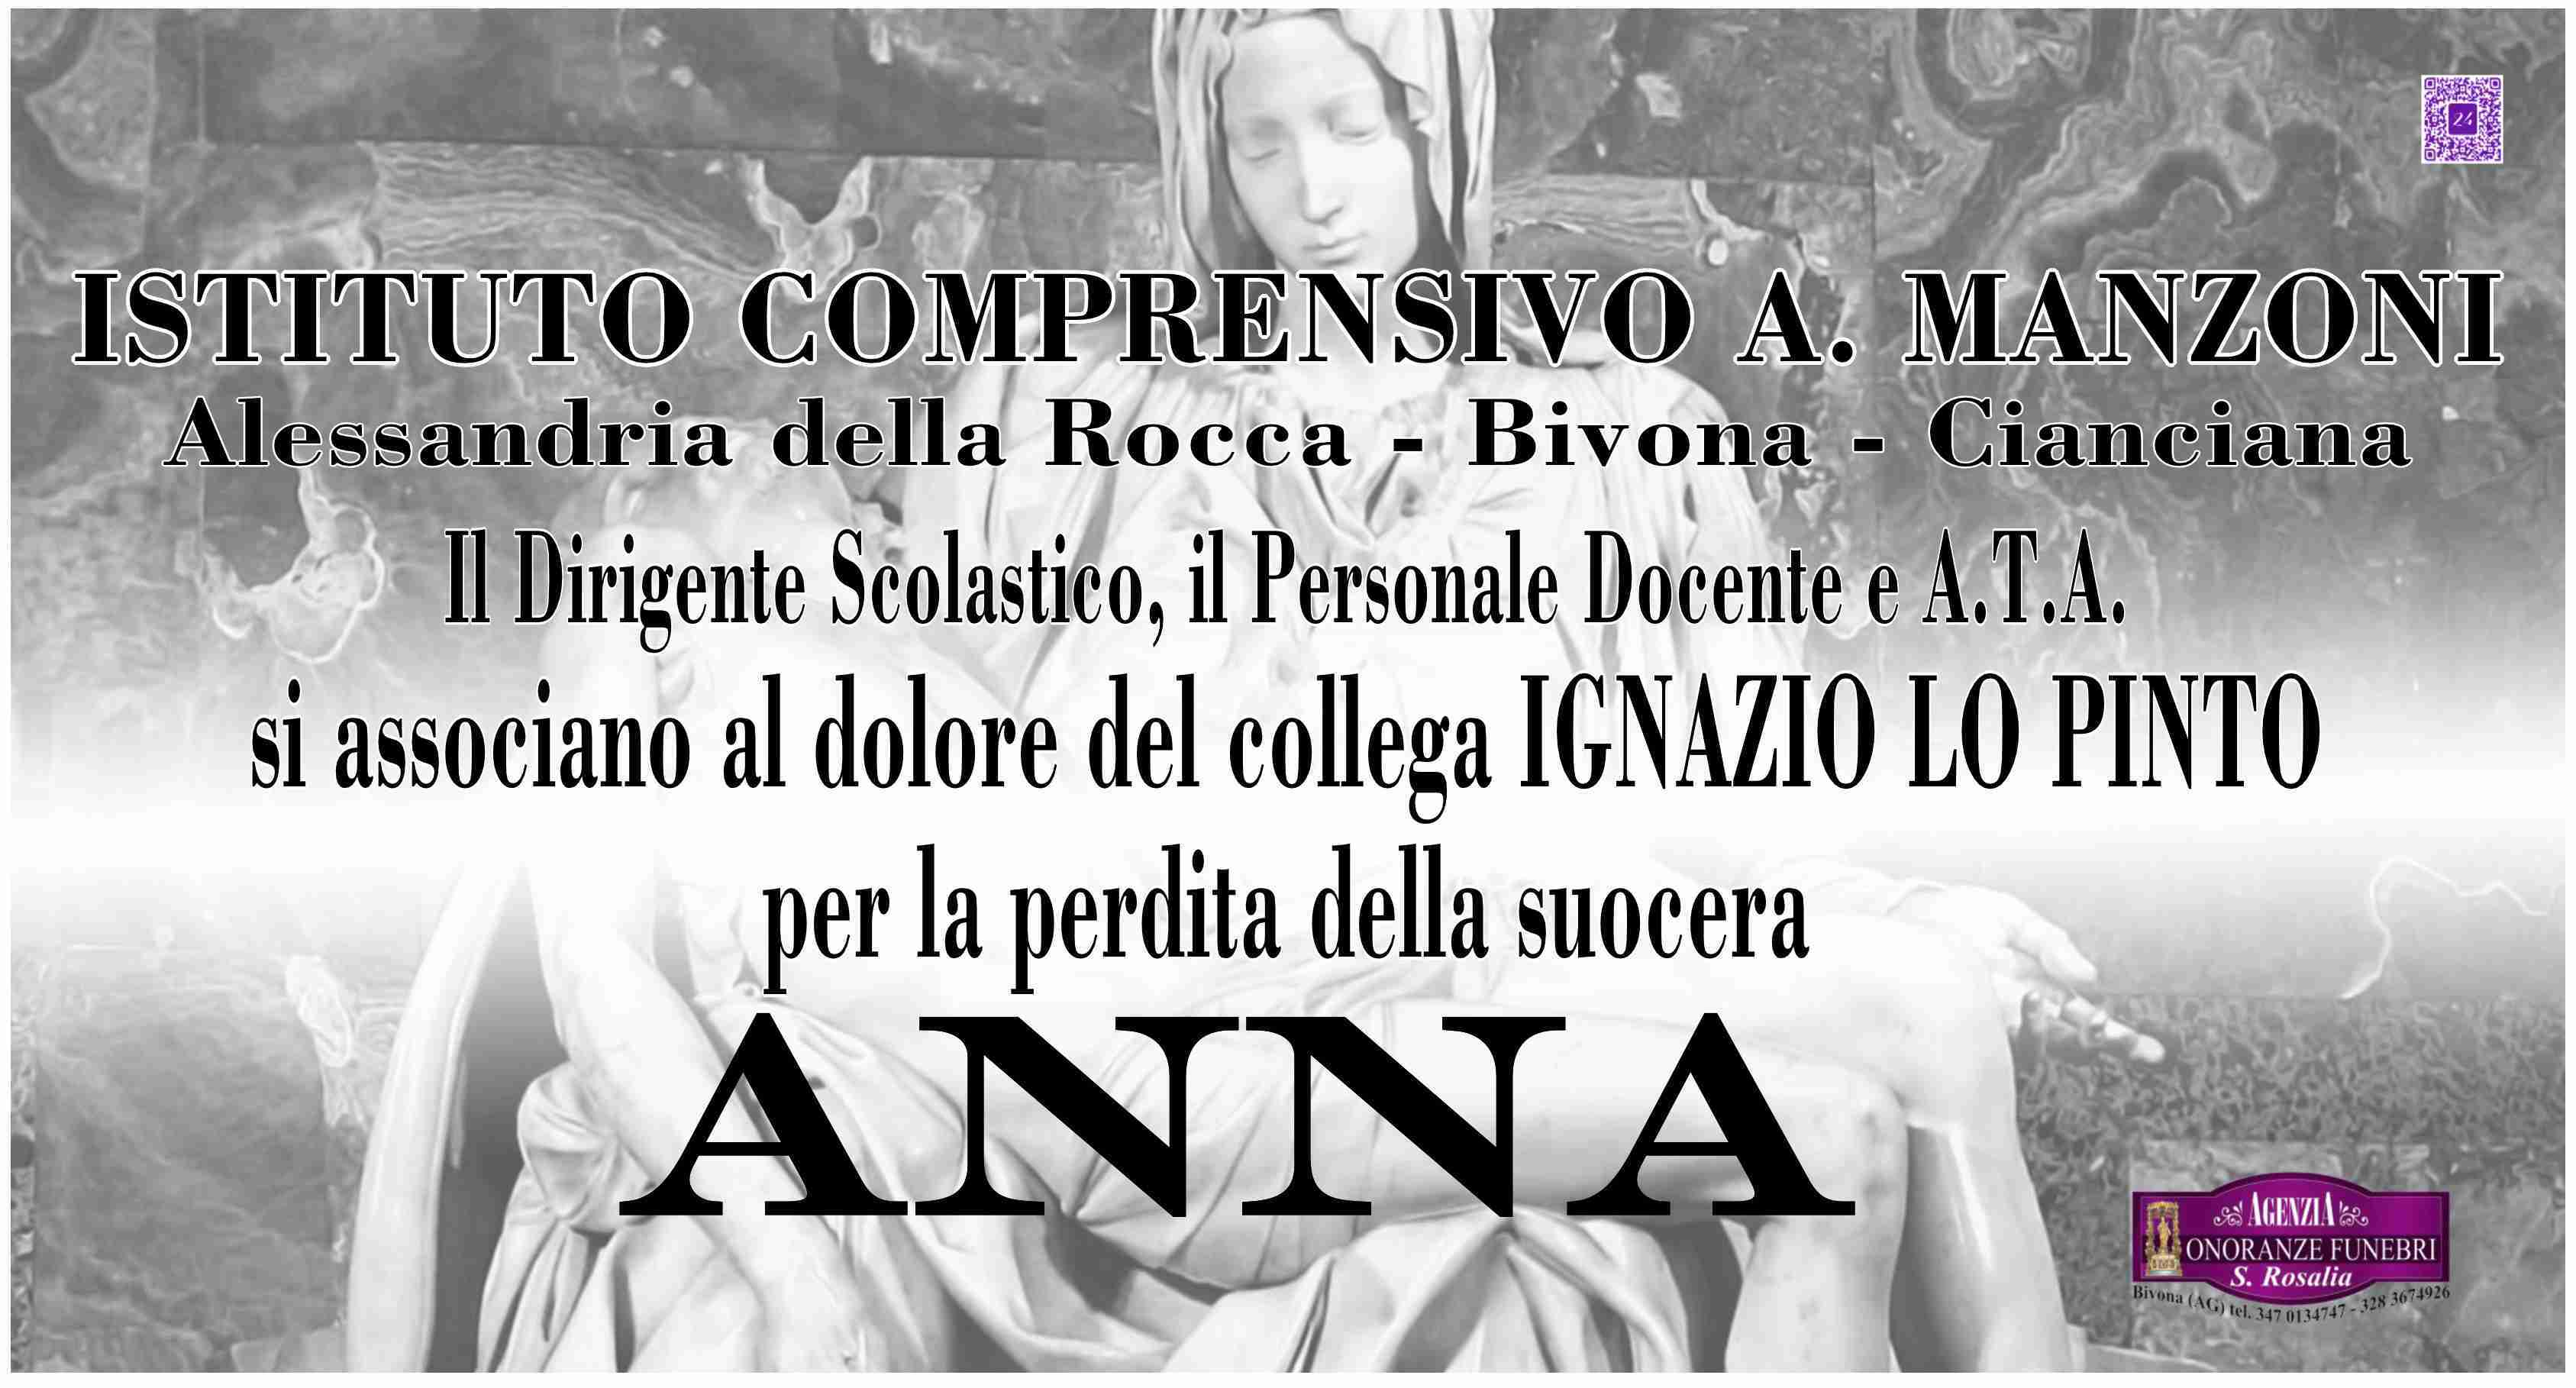 Anna La Rocca